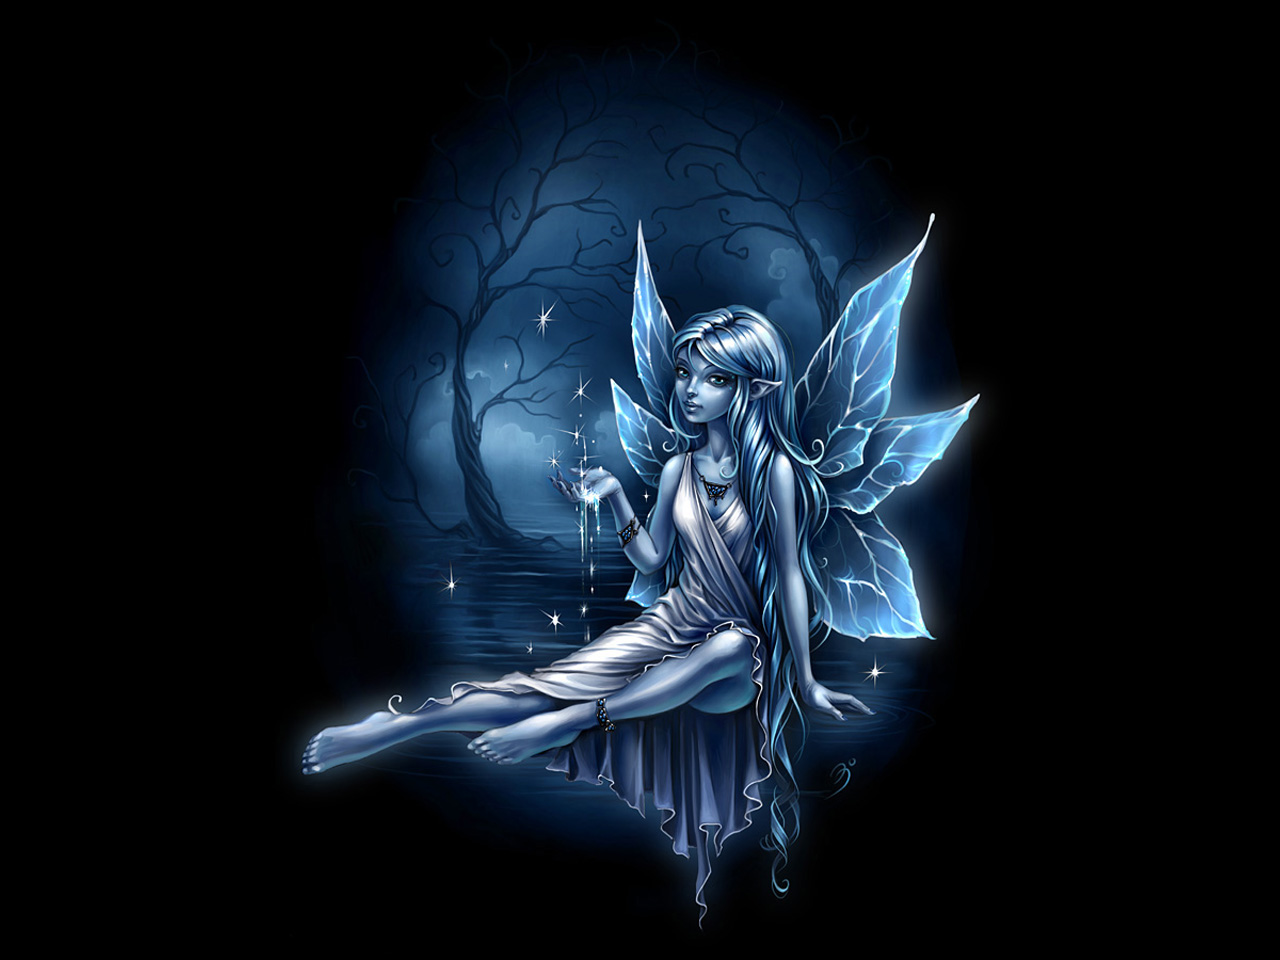 3d обои Эльфийка плещется лунной ночью, с ладони взлетают вверх волшебные искорки  эльфы # 89460